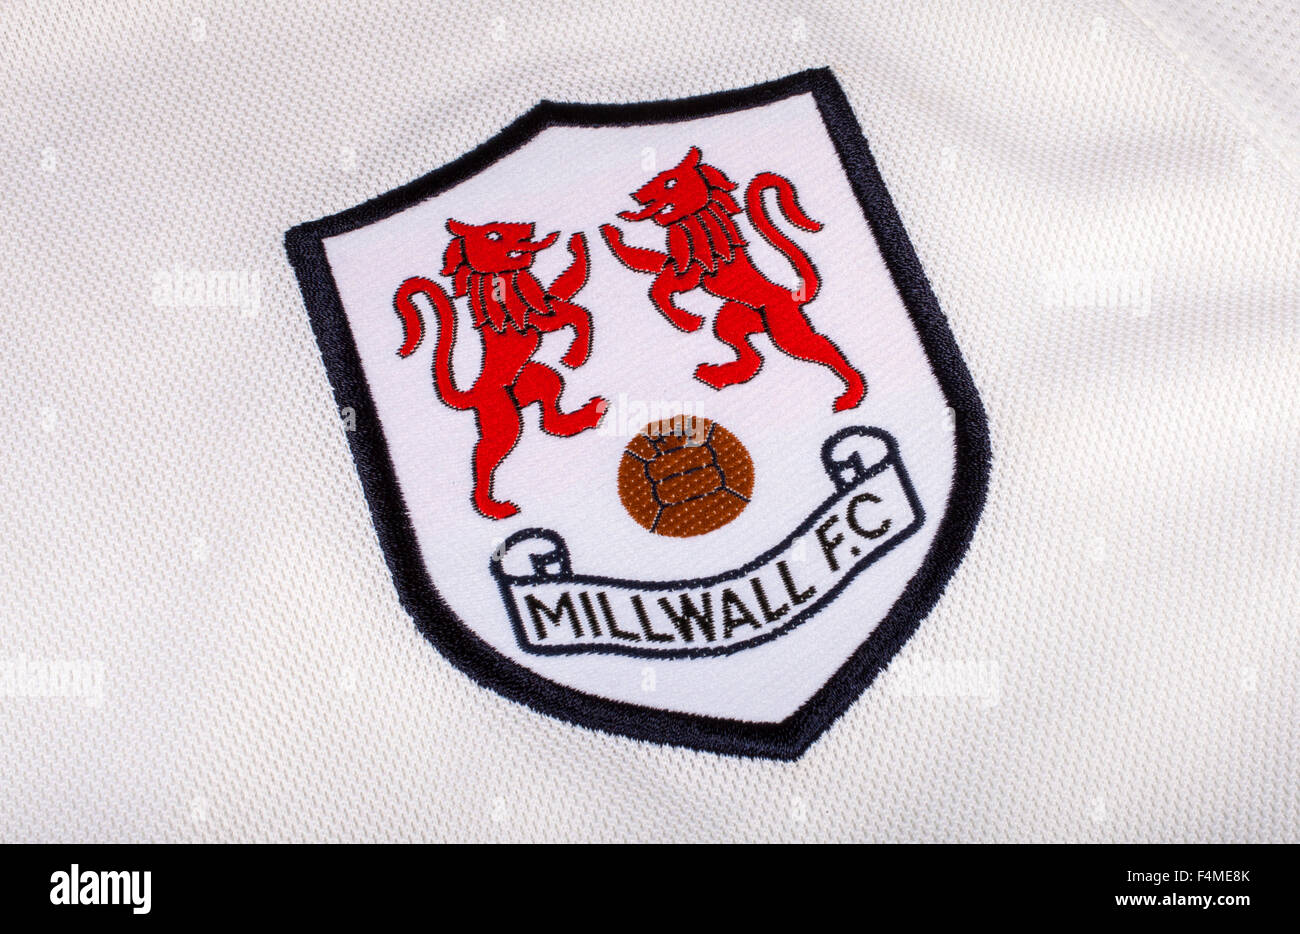 Londres, Royaume-Uni - 19 octobre 2015 : Le club crête sur un shirt FC Millwall, le 19 octobre 2015. Banque D'Images